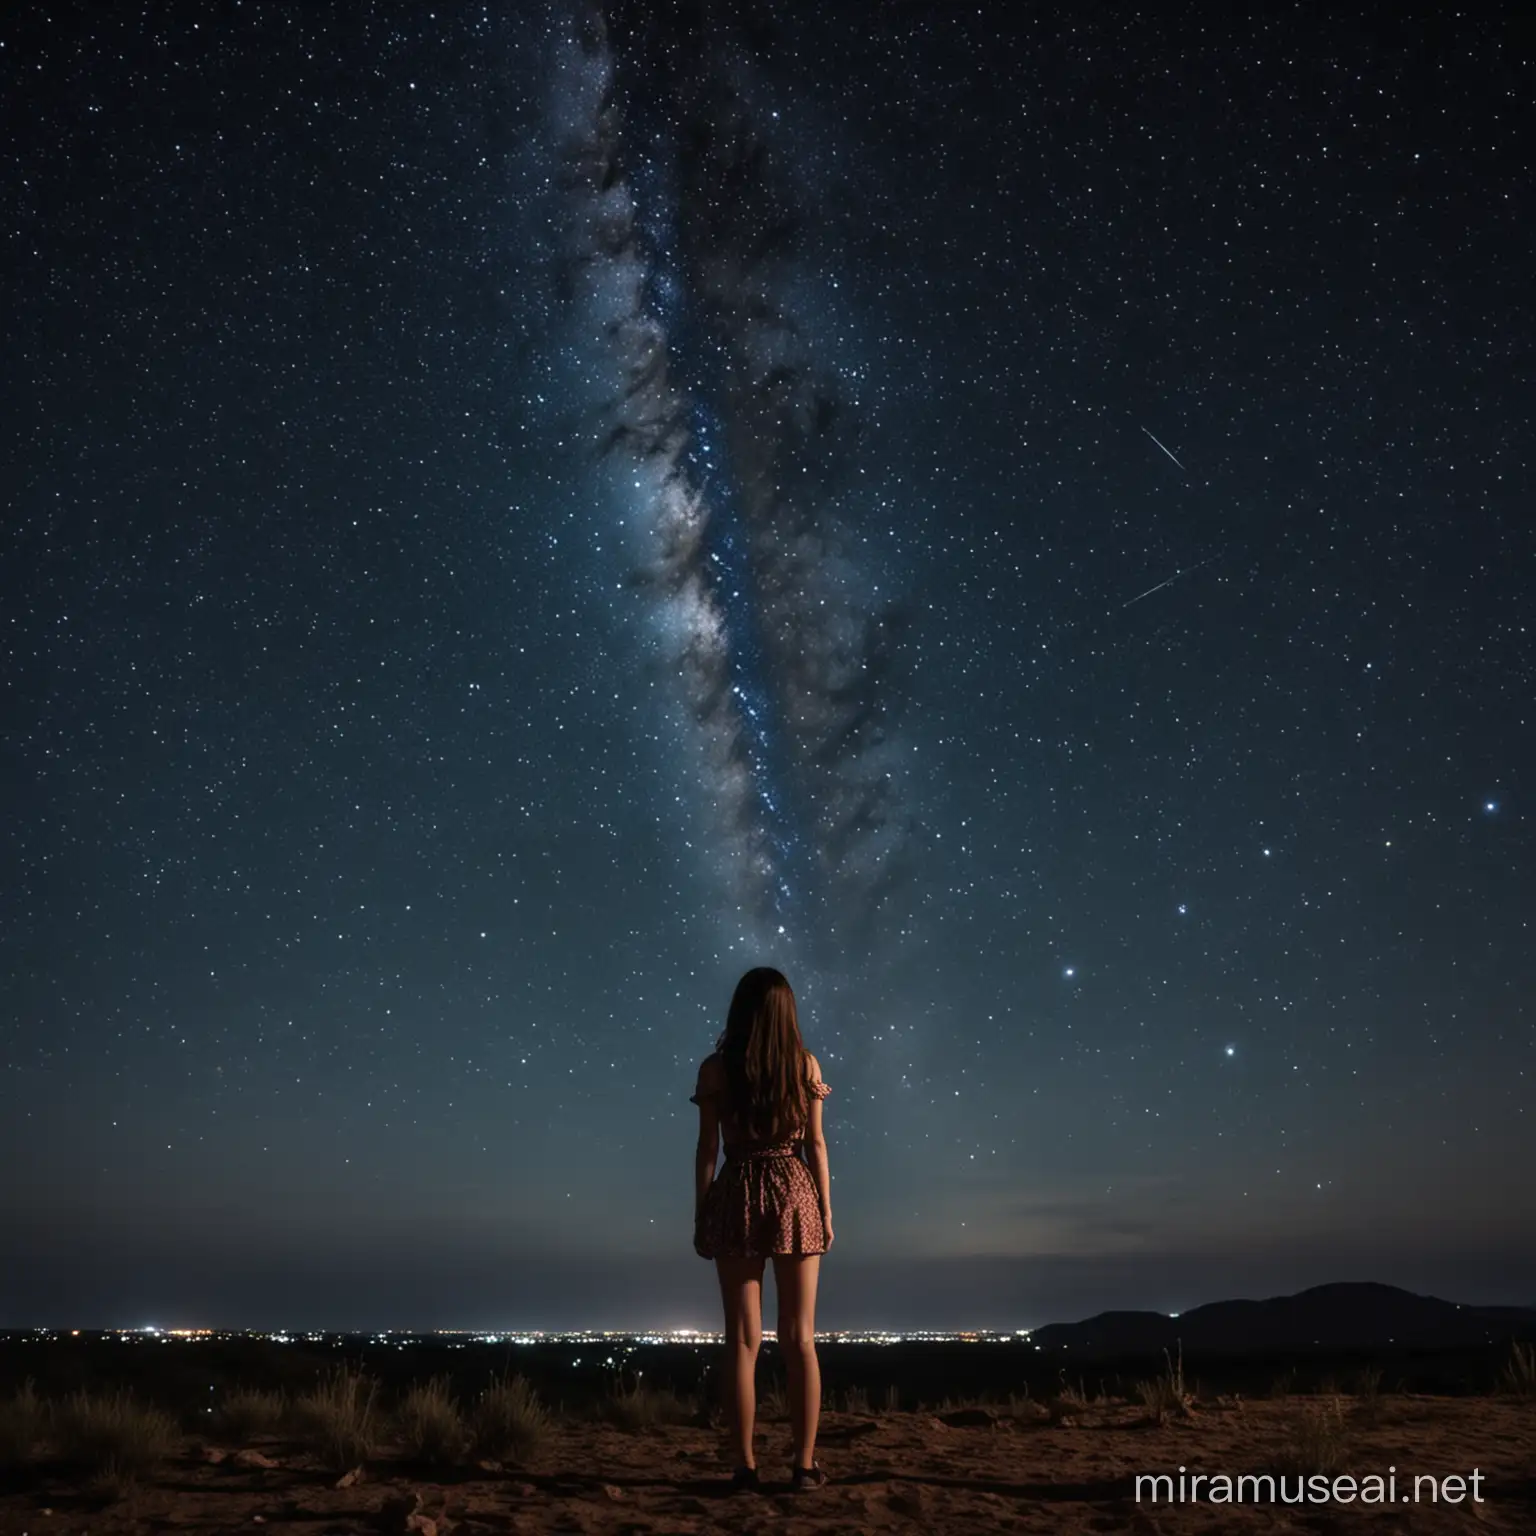 Красивая девушка смотрит на ночное небо с восхищением.Она такая маленькая по сравнению с космическим простором. 